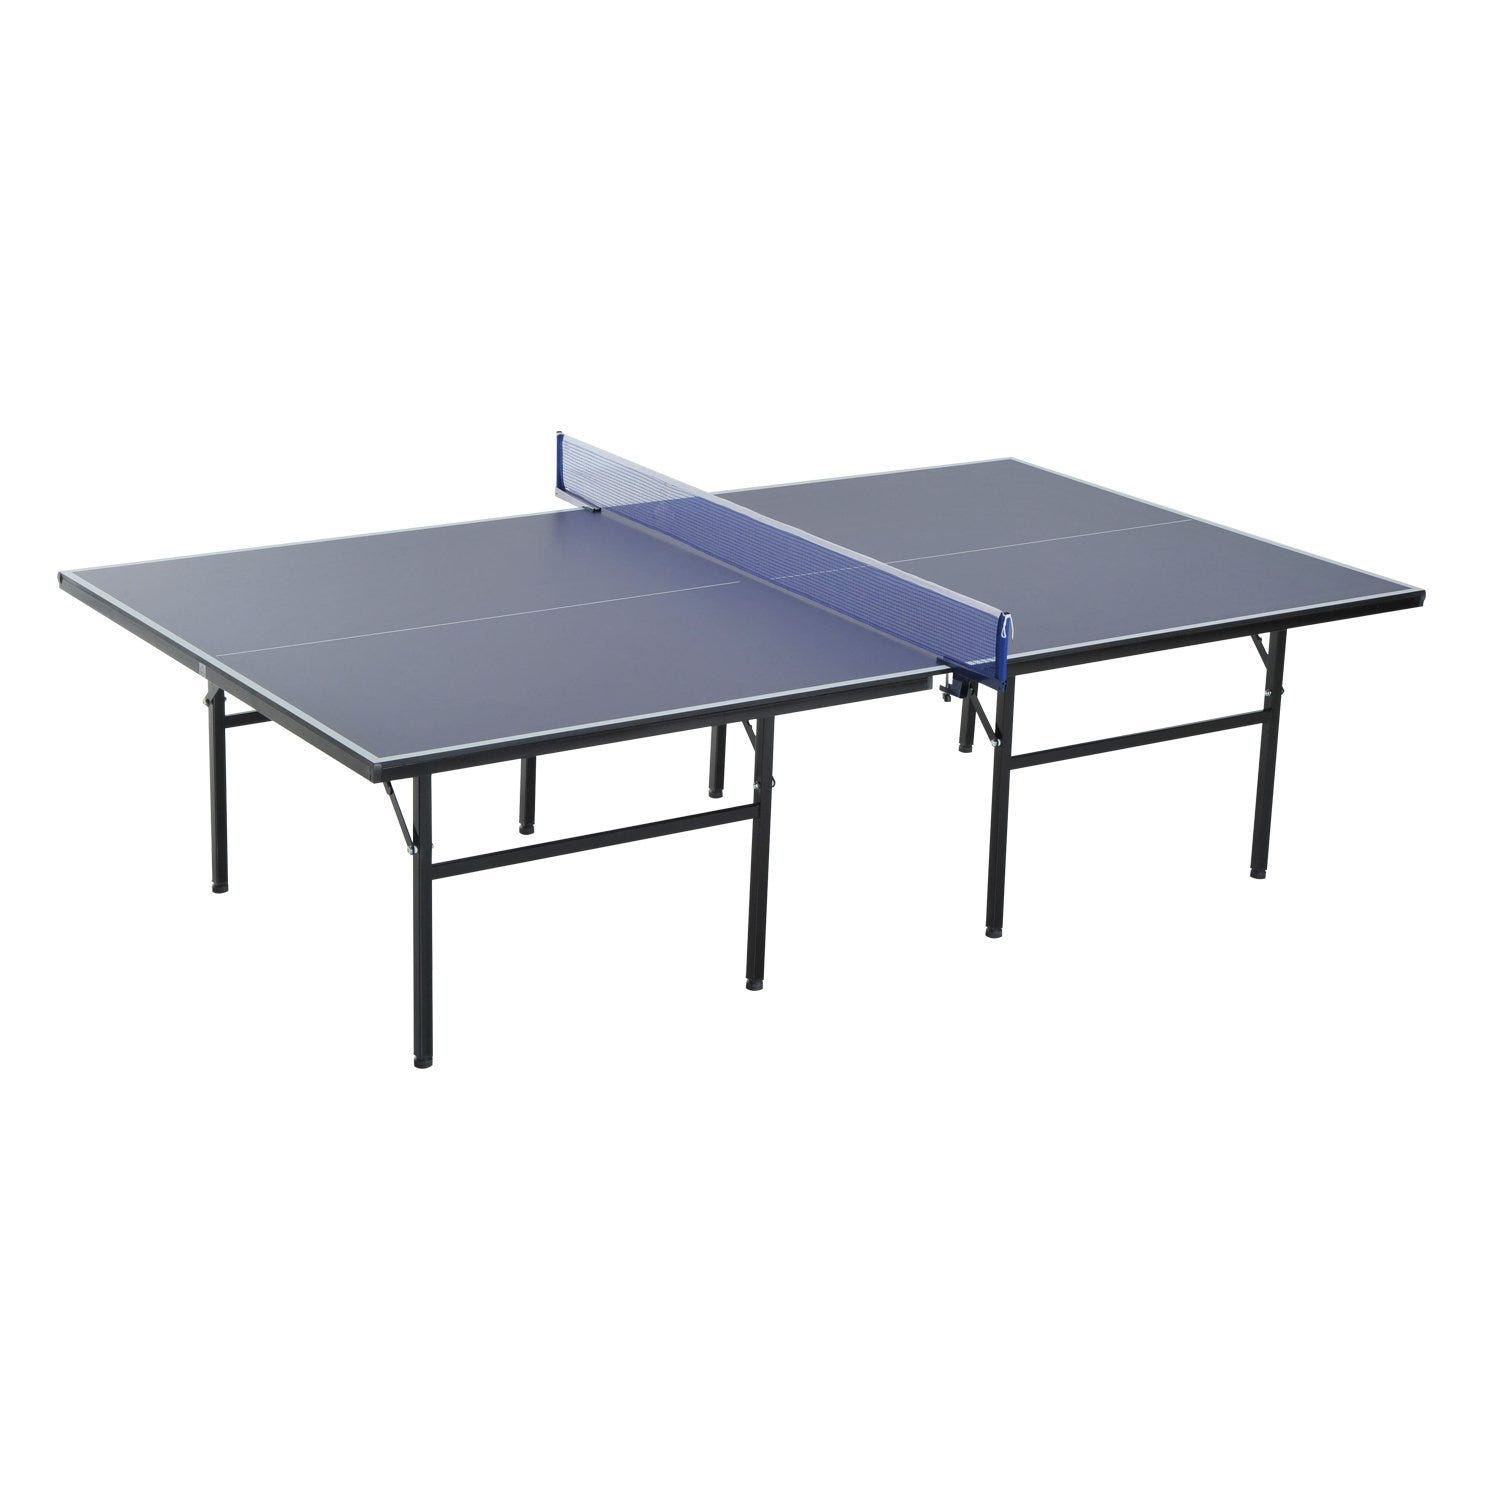 Mesa de Ping Pong Profissional para Interior e Exterior com Rede Raquetes e  Bolas 274x152,5x76 cm Azul | O Meu Jardim